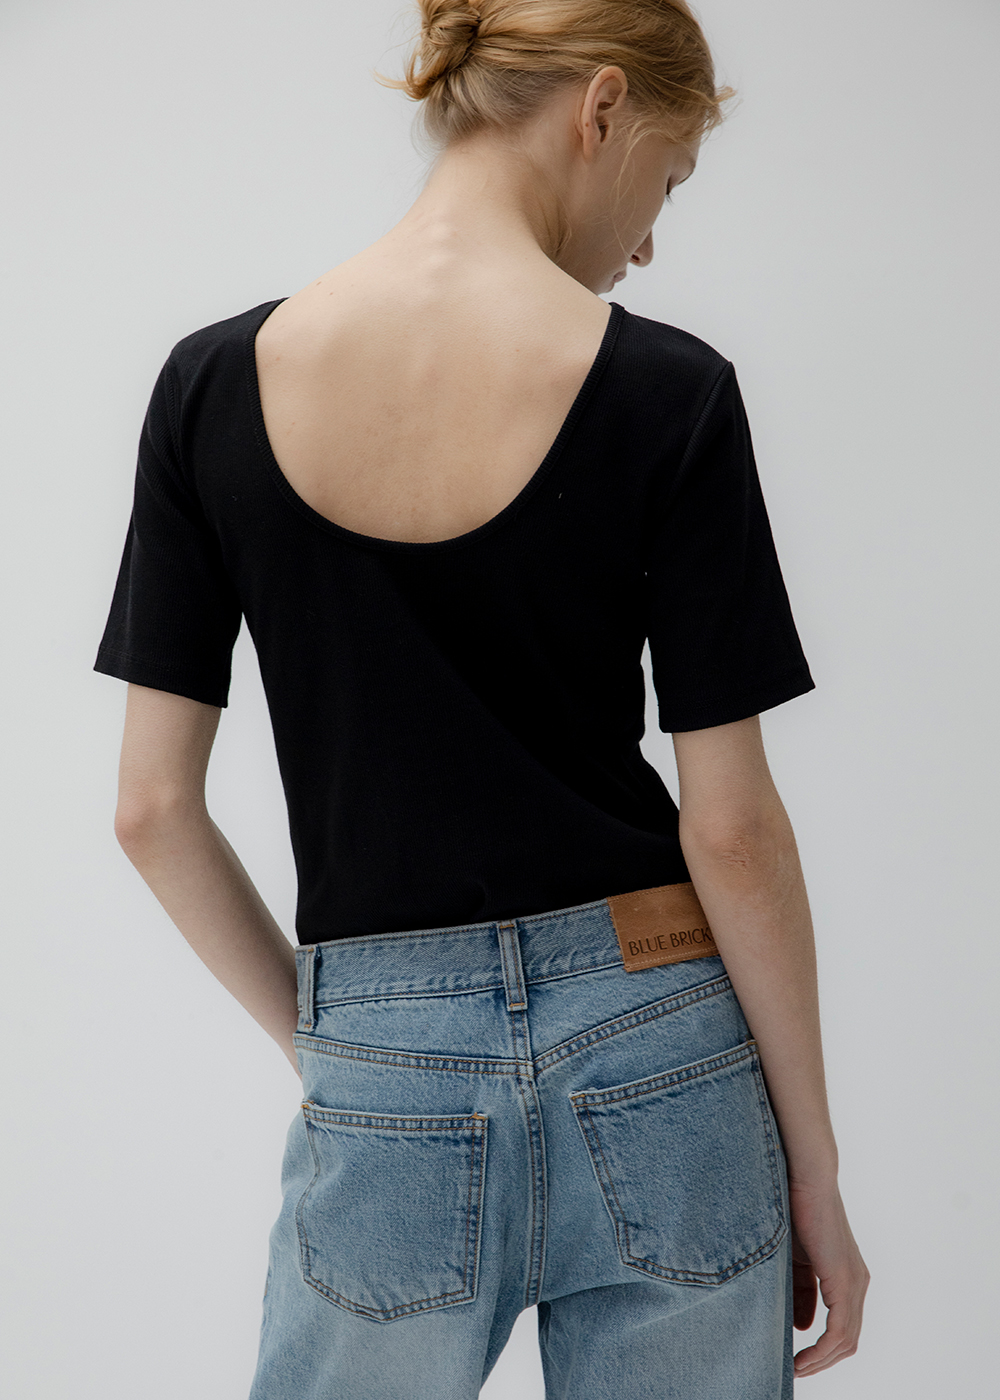 블루브릭,[3차] Backless t-shirt (3colors)